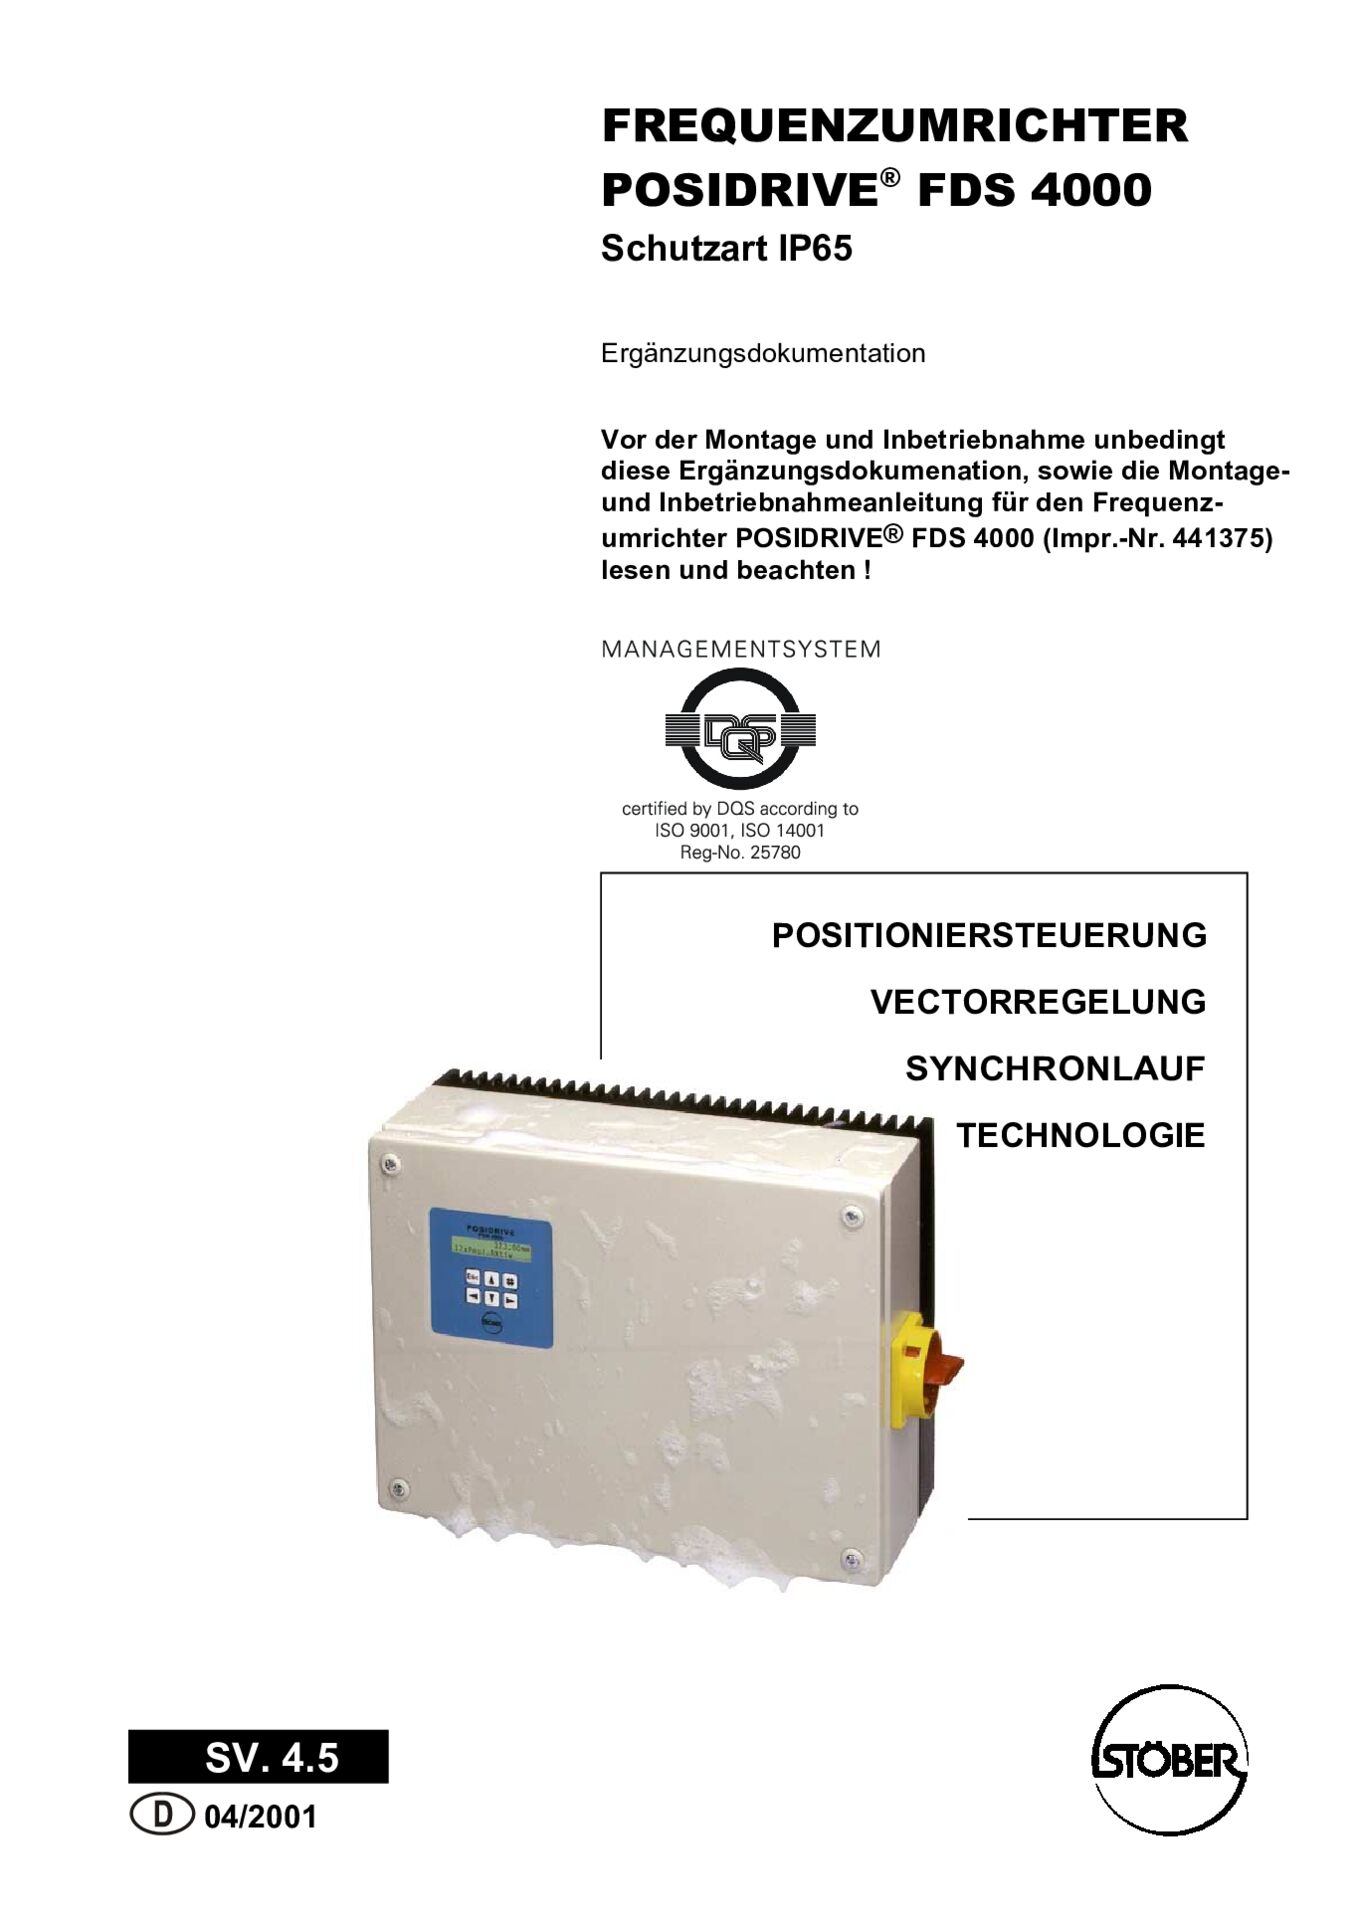 Ergänzungsdokumentation Frequenzumrichter POSIDRIVE FDS 4000 IP65